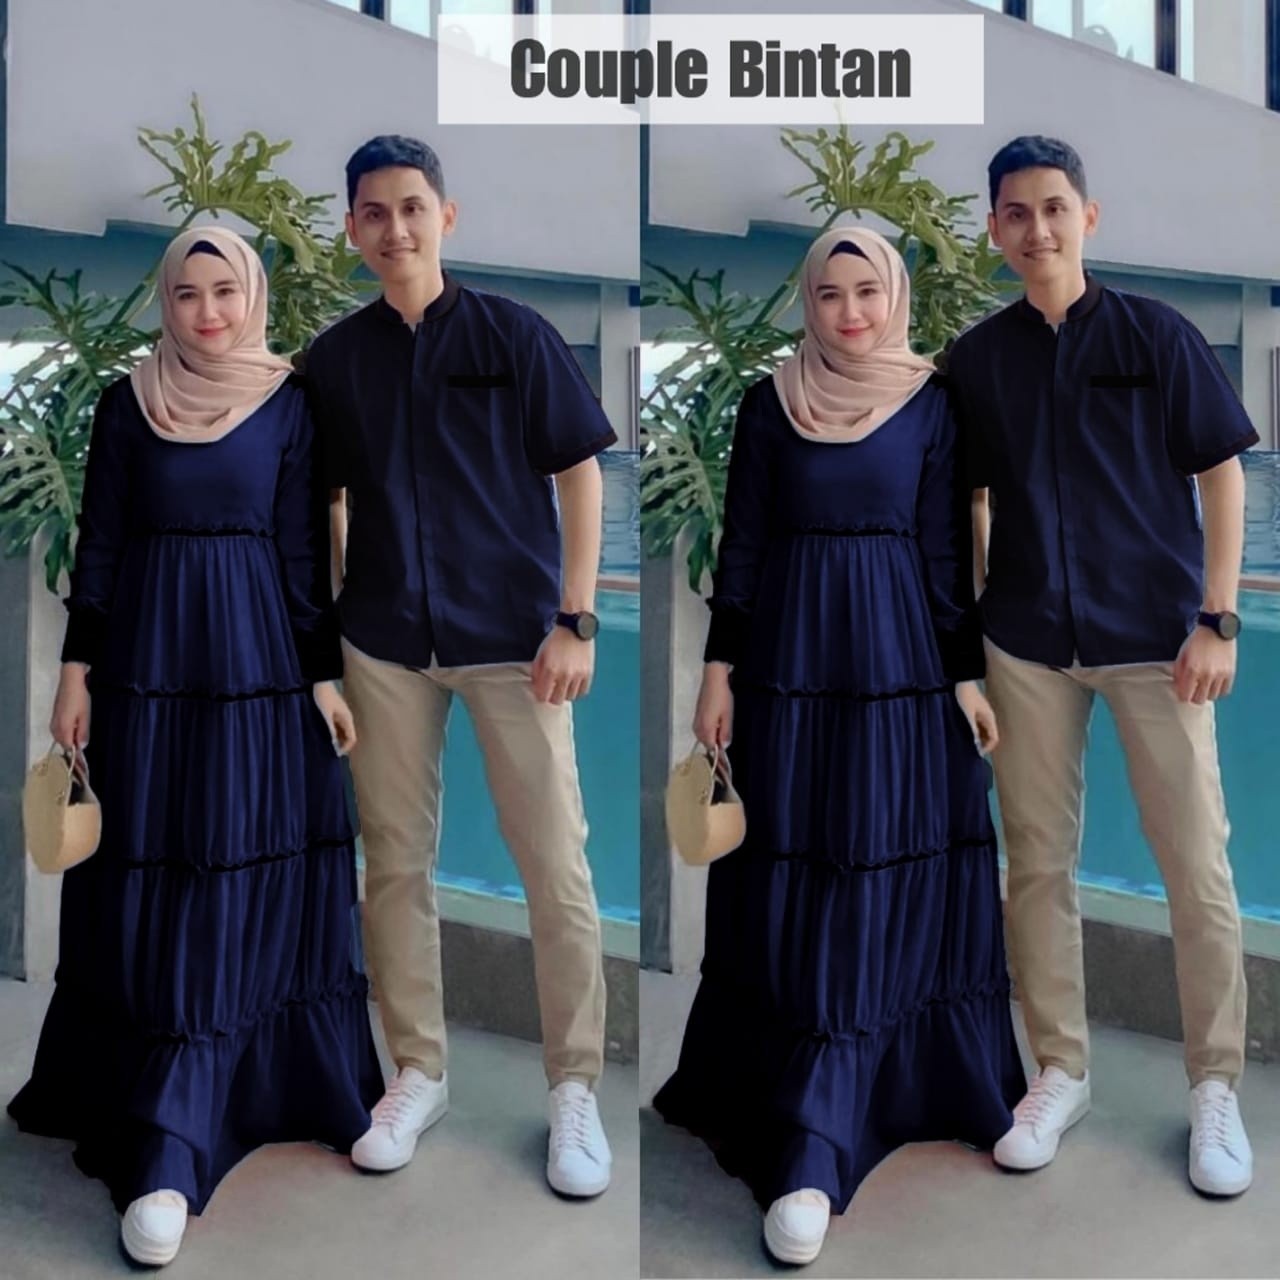 Couple Bintan